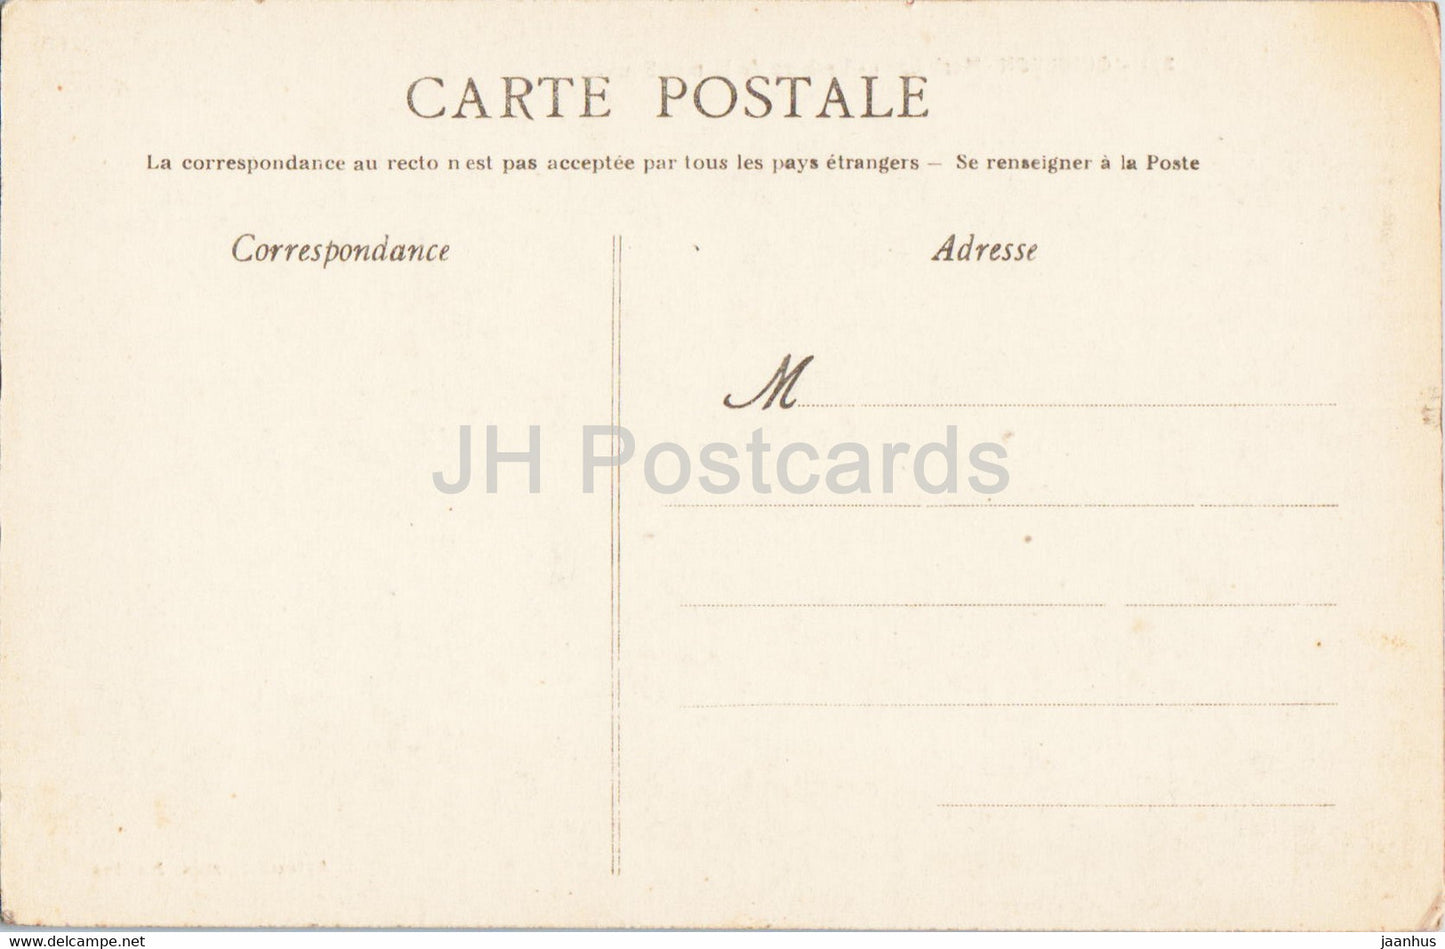 Quiberon - Rochers de la mer Sauvage - 231 - carte postale ancienne - France - inutilisée